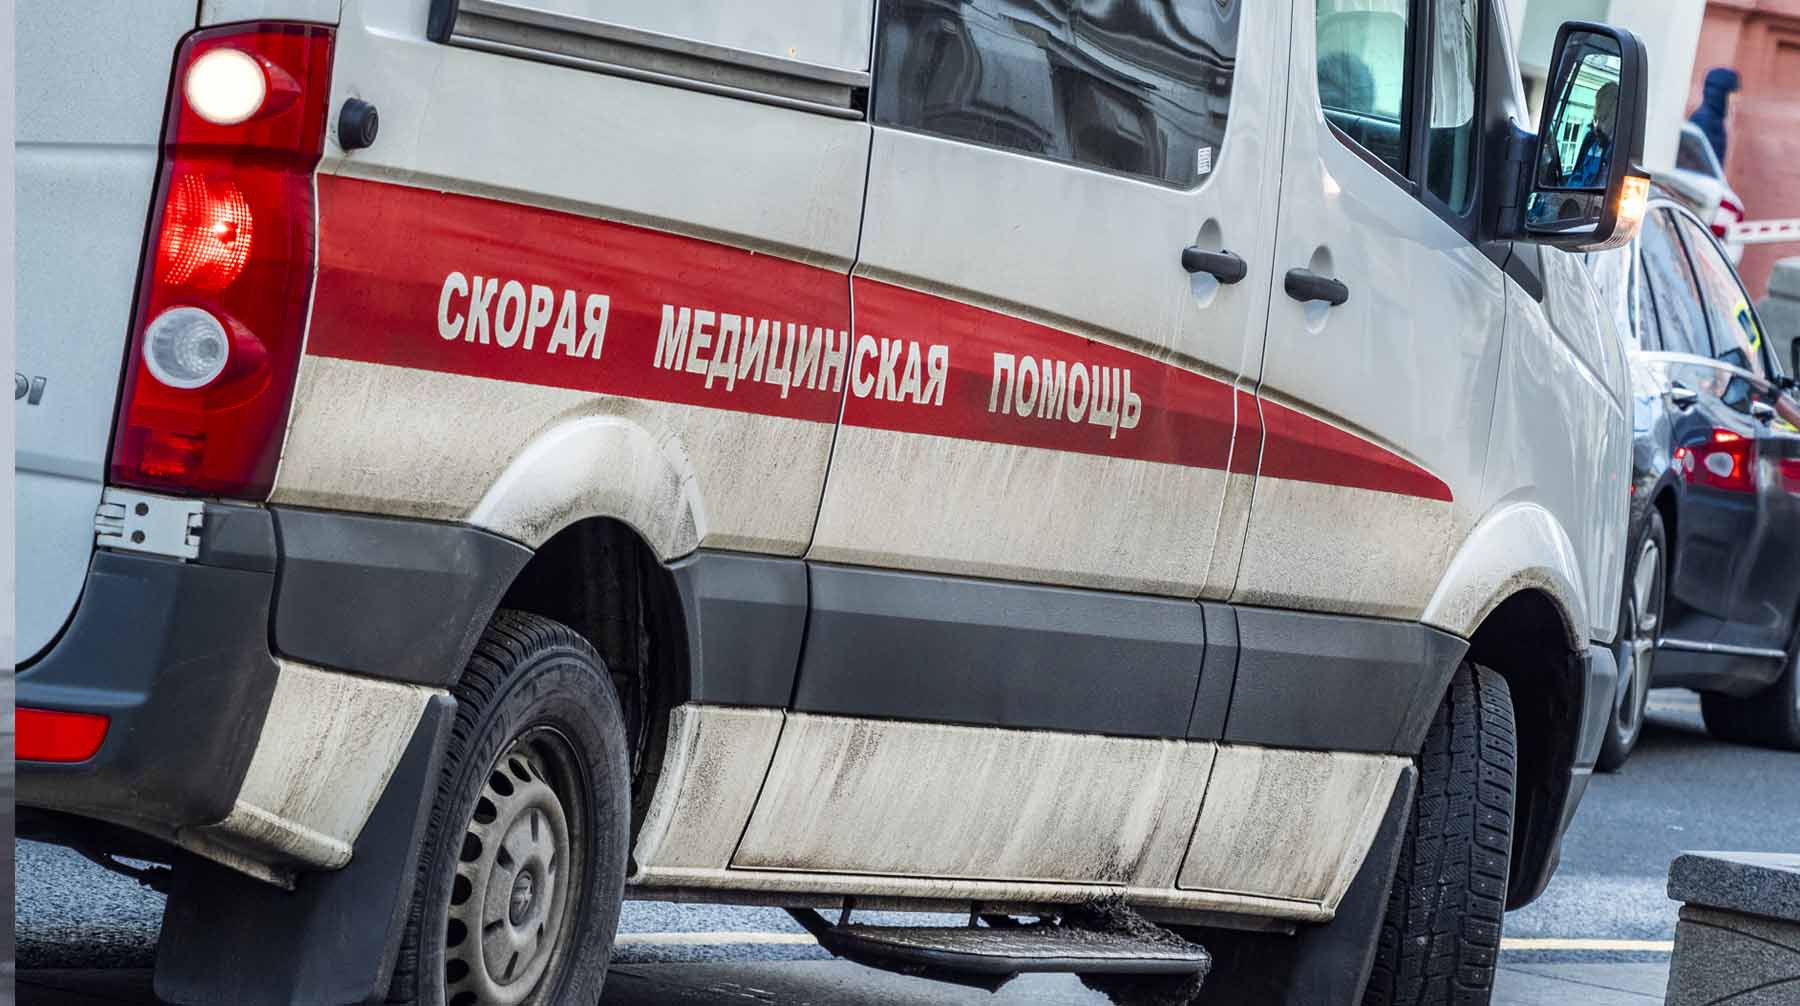 Dailystorm - В Санкт-Петербурге ученик выпал из окна школы